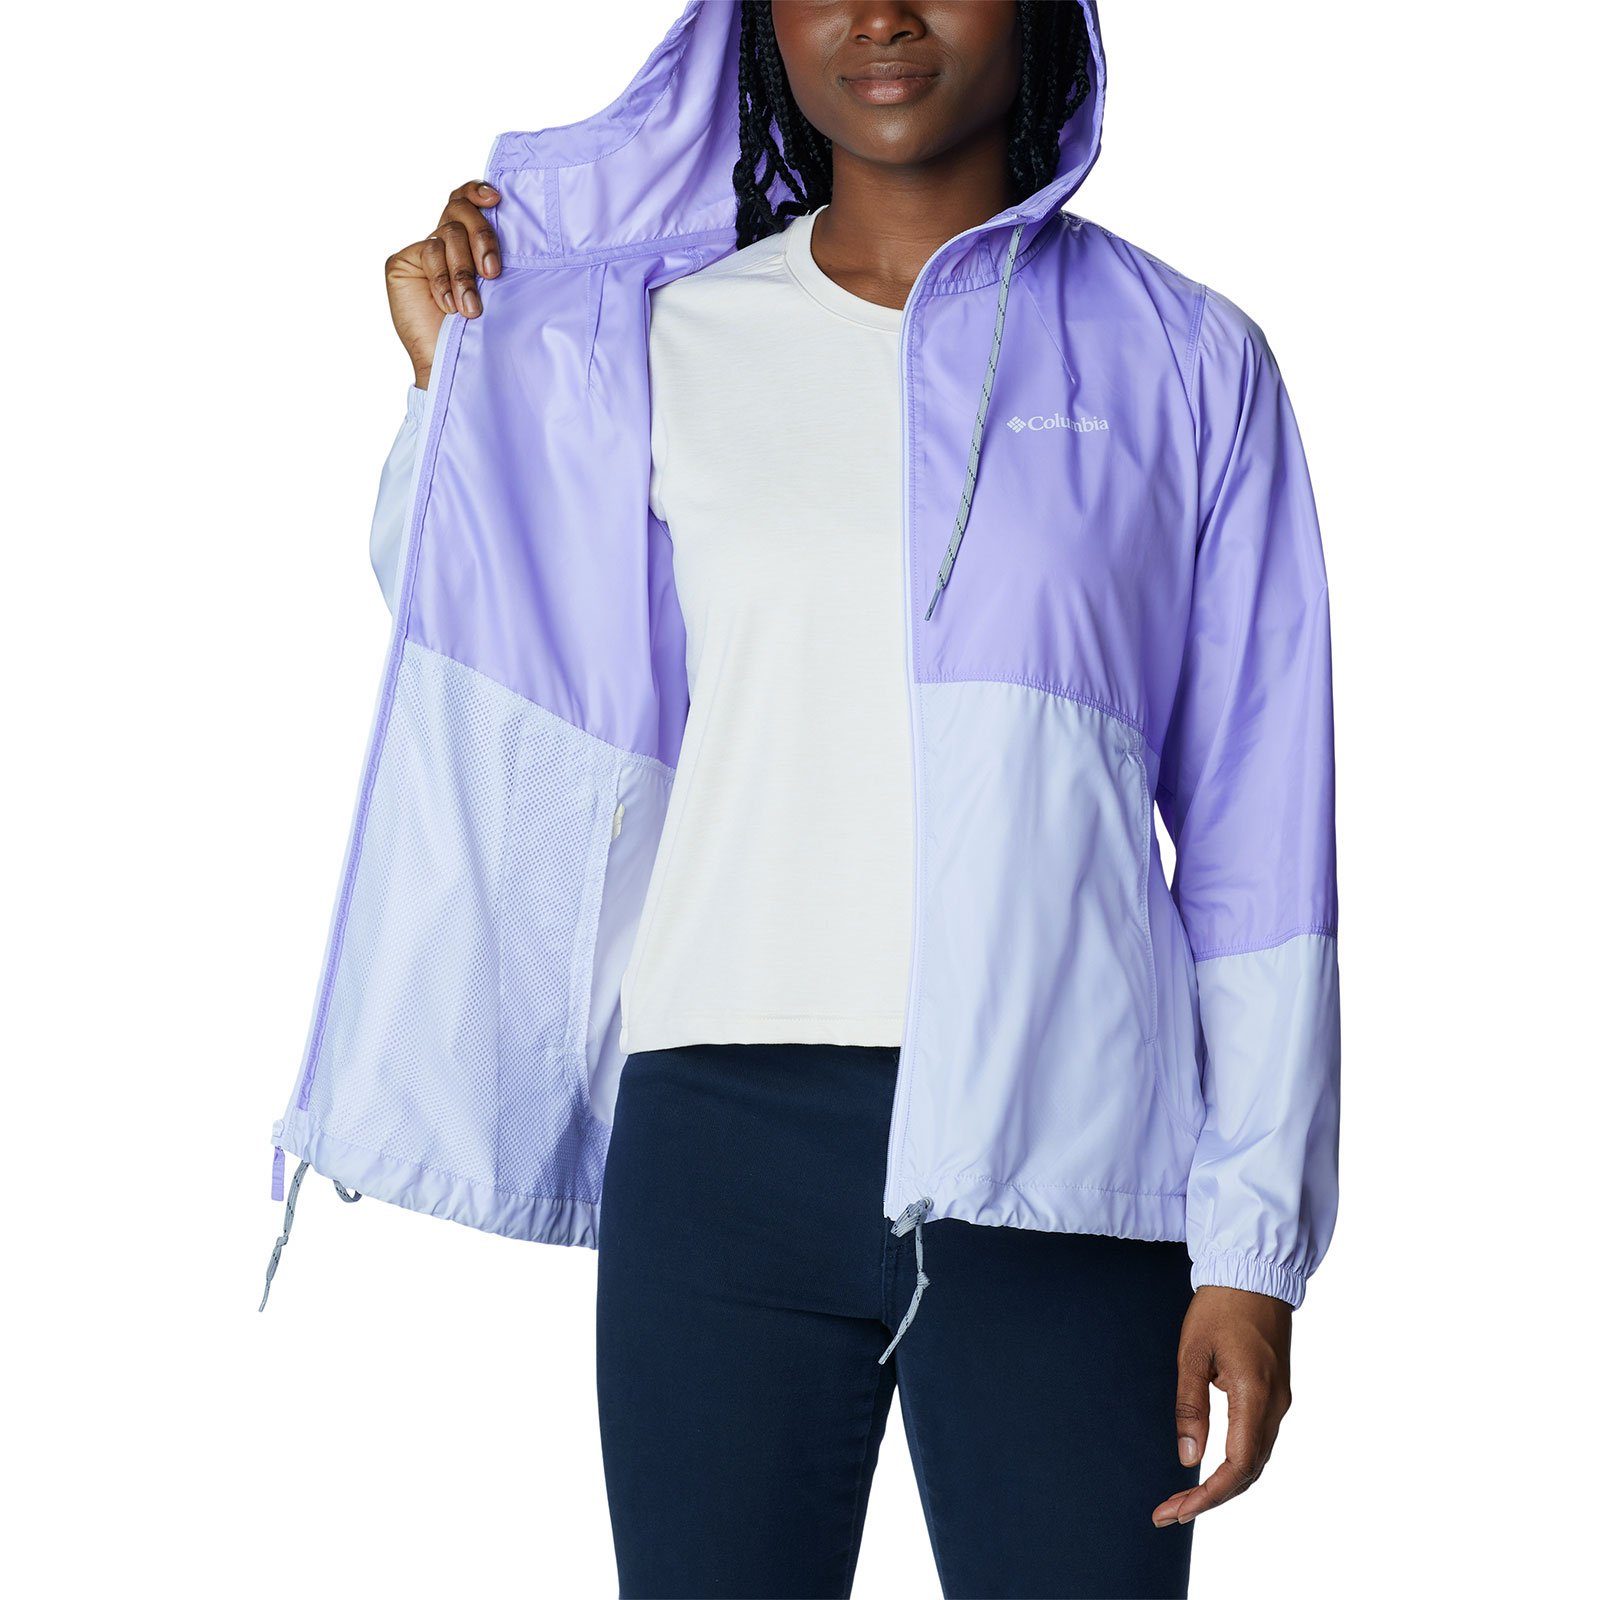 Windjacke purple mit Flash Taschen 535 Forward™ purple frosted / Windbreaker Columbia